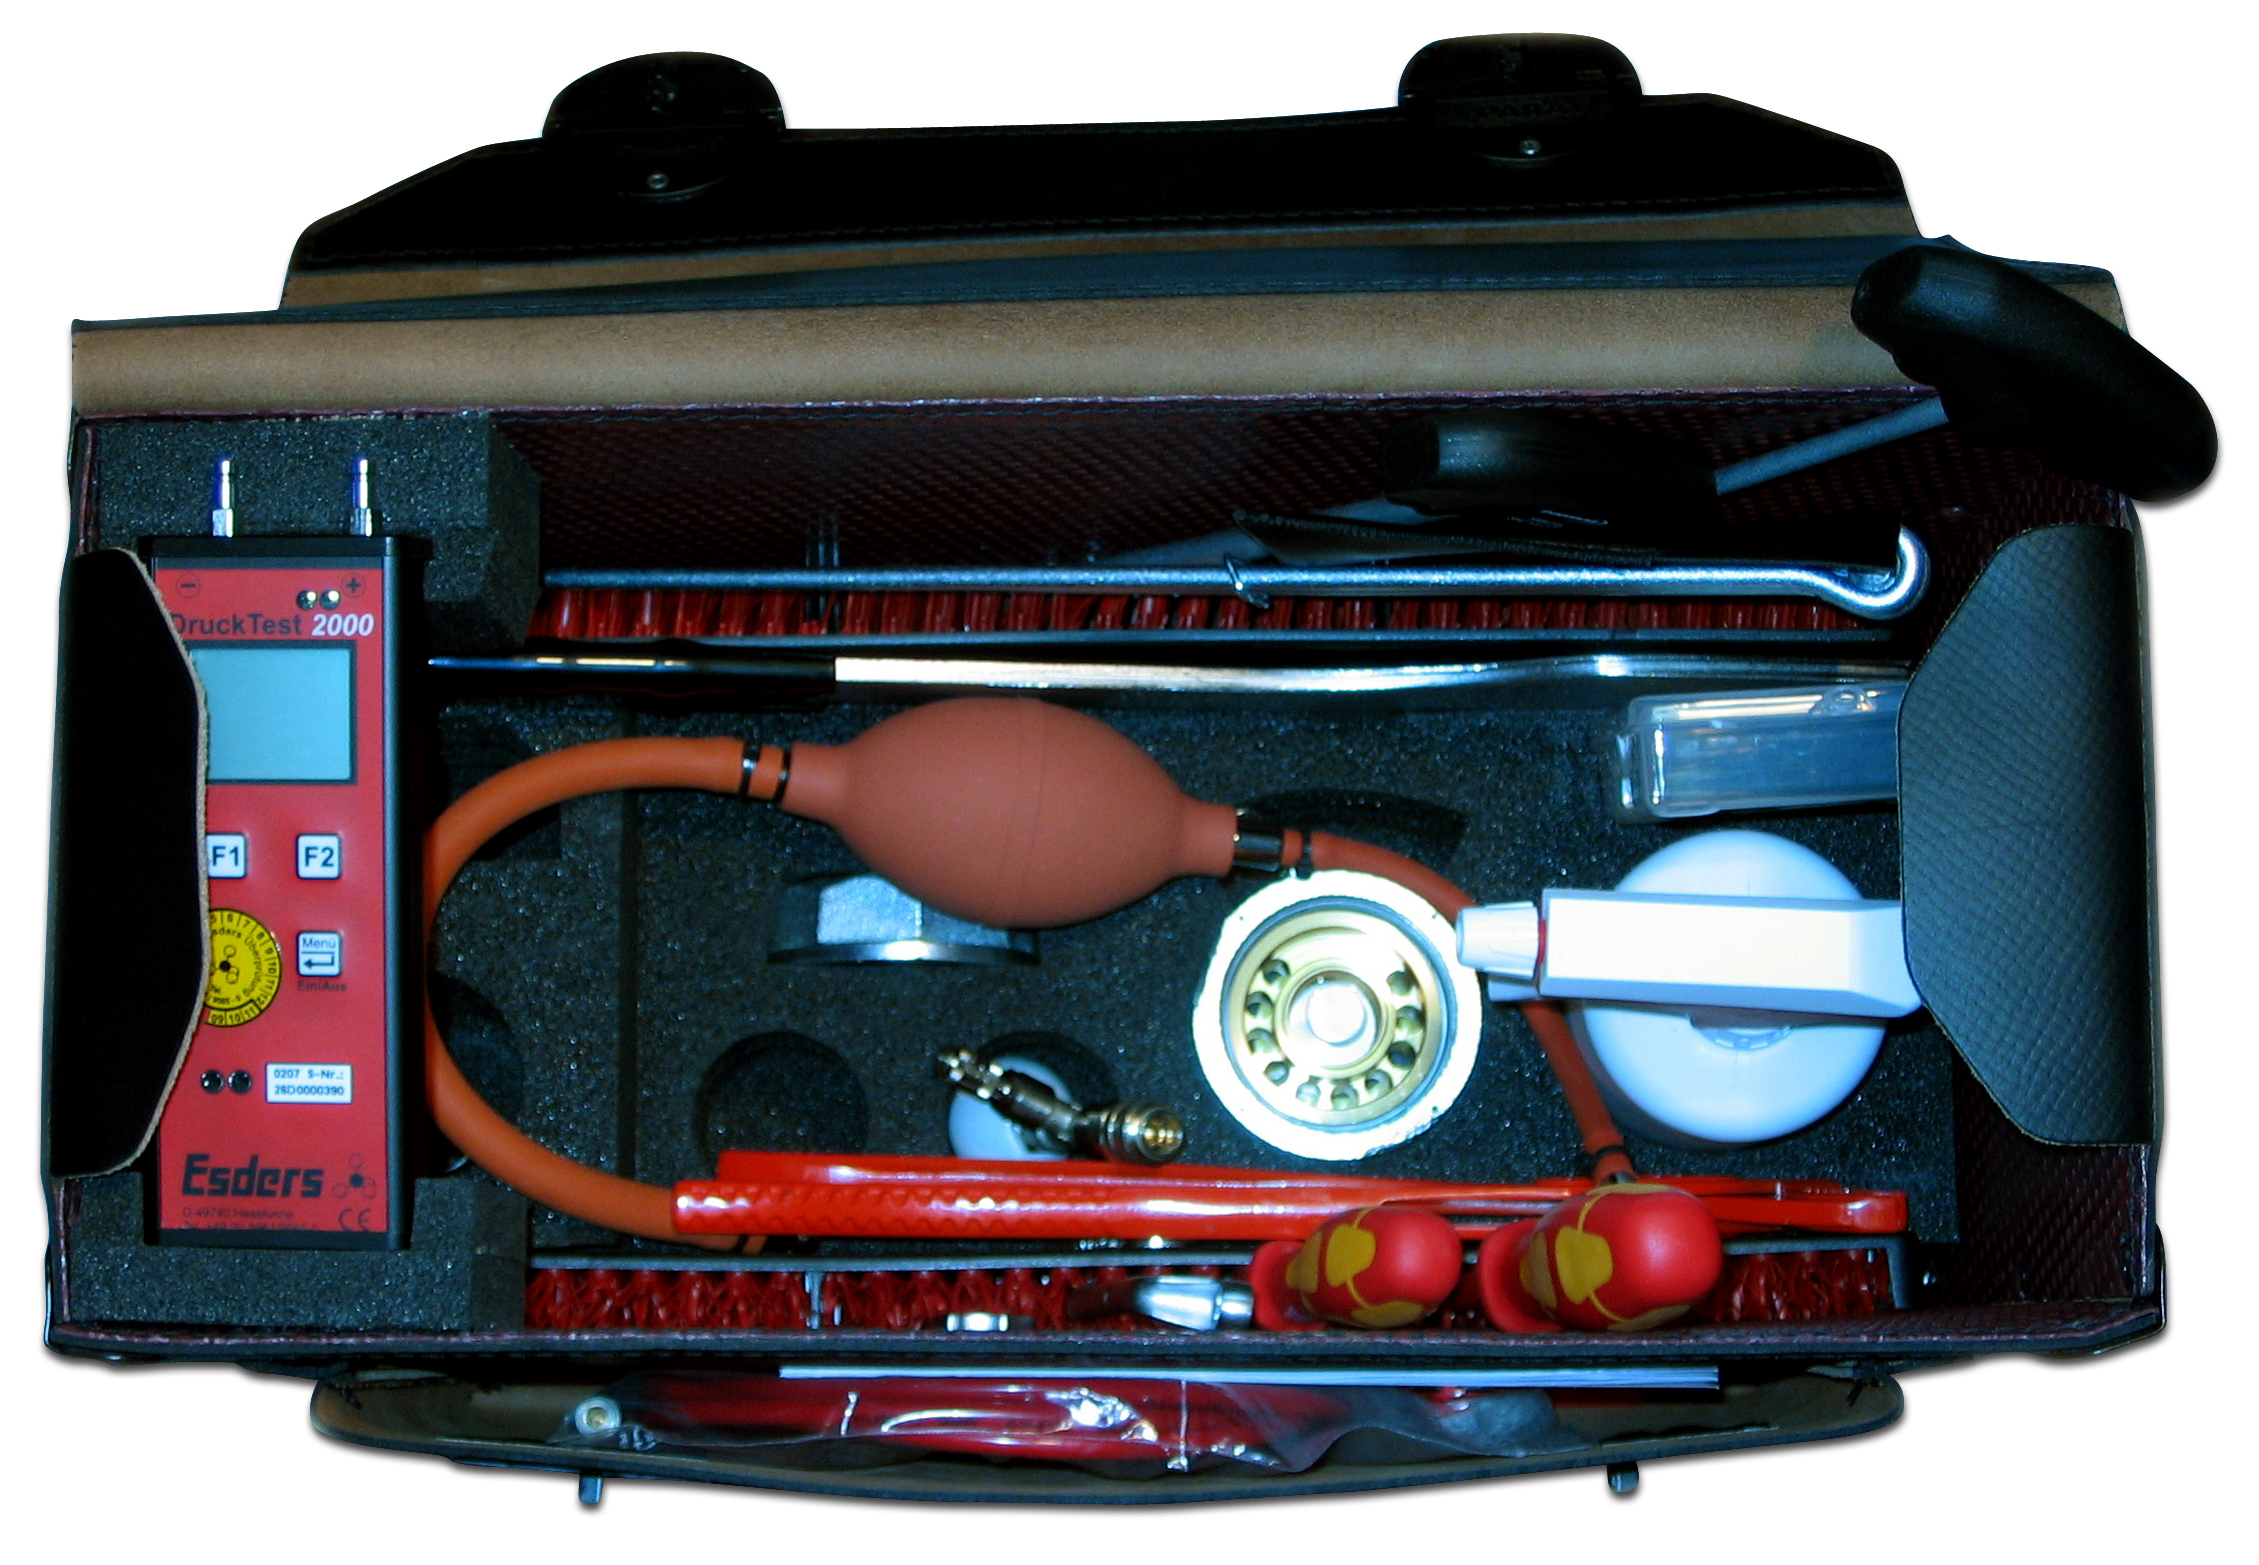 Werkzeugledertasche mit Einsatz für
DruckTest 2000, LeckOmiO, VibraGas